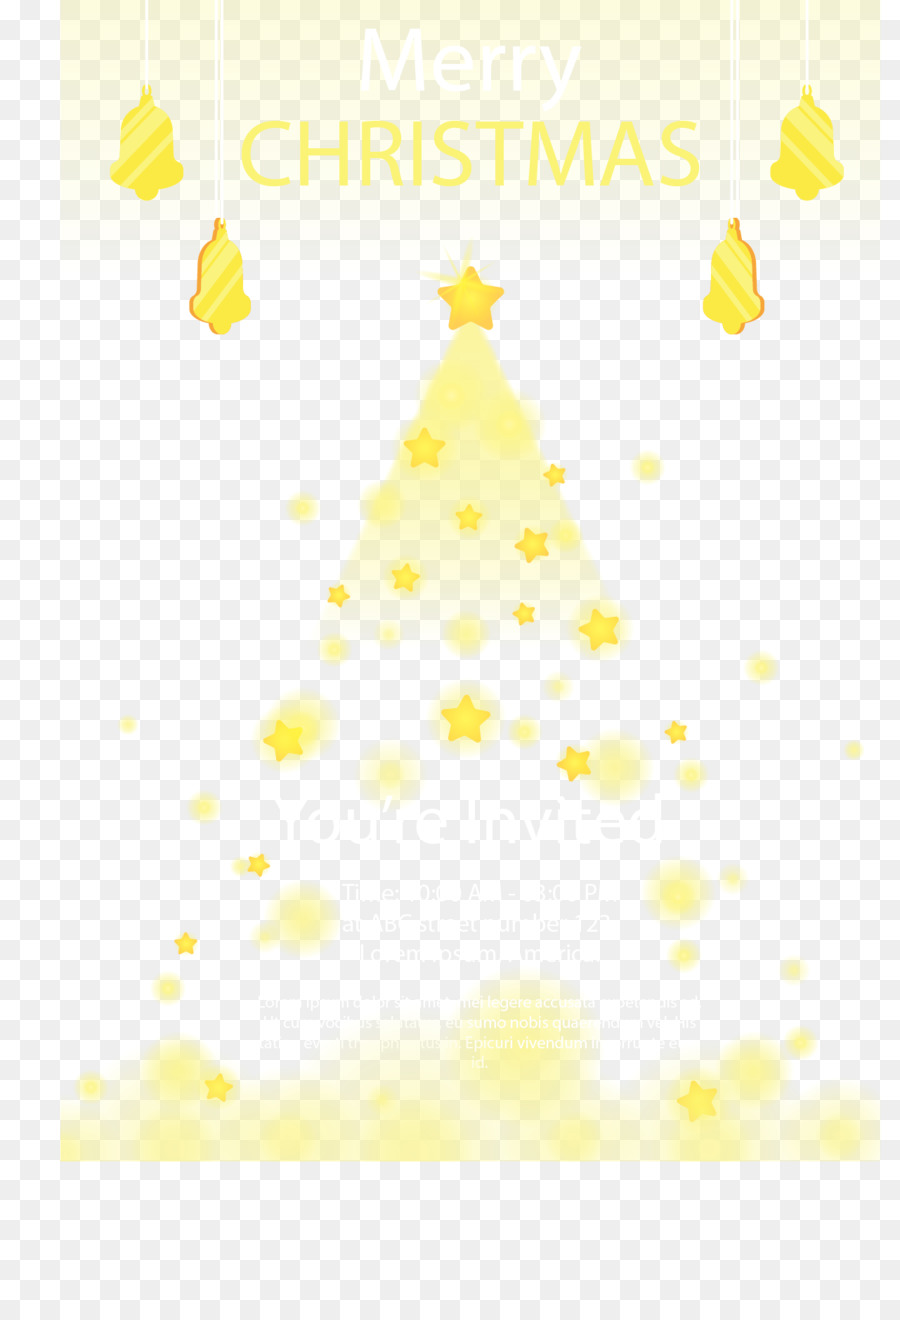 gelb illustration - Gelbe Sterne Weihnachten Einladungskarte